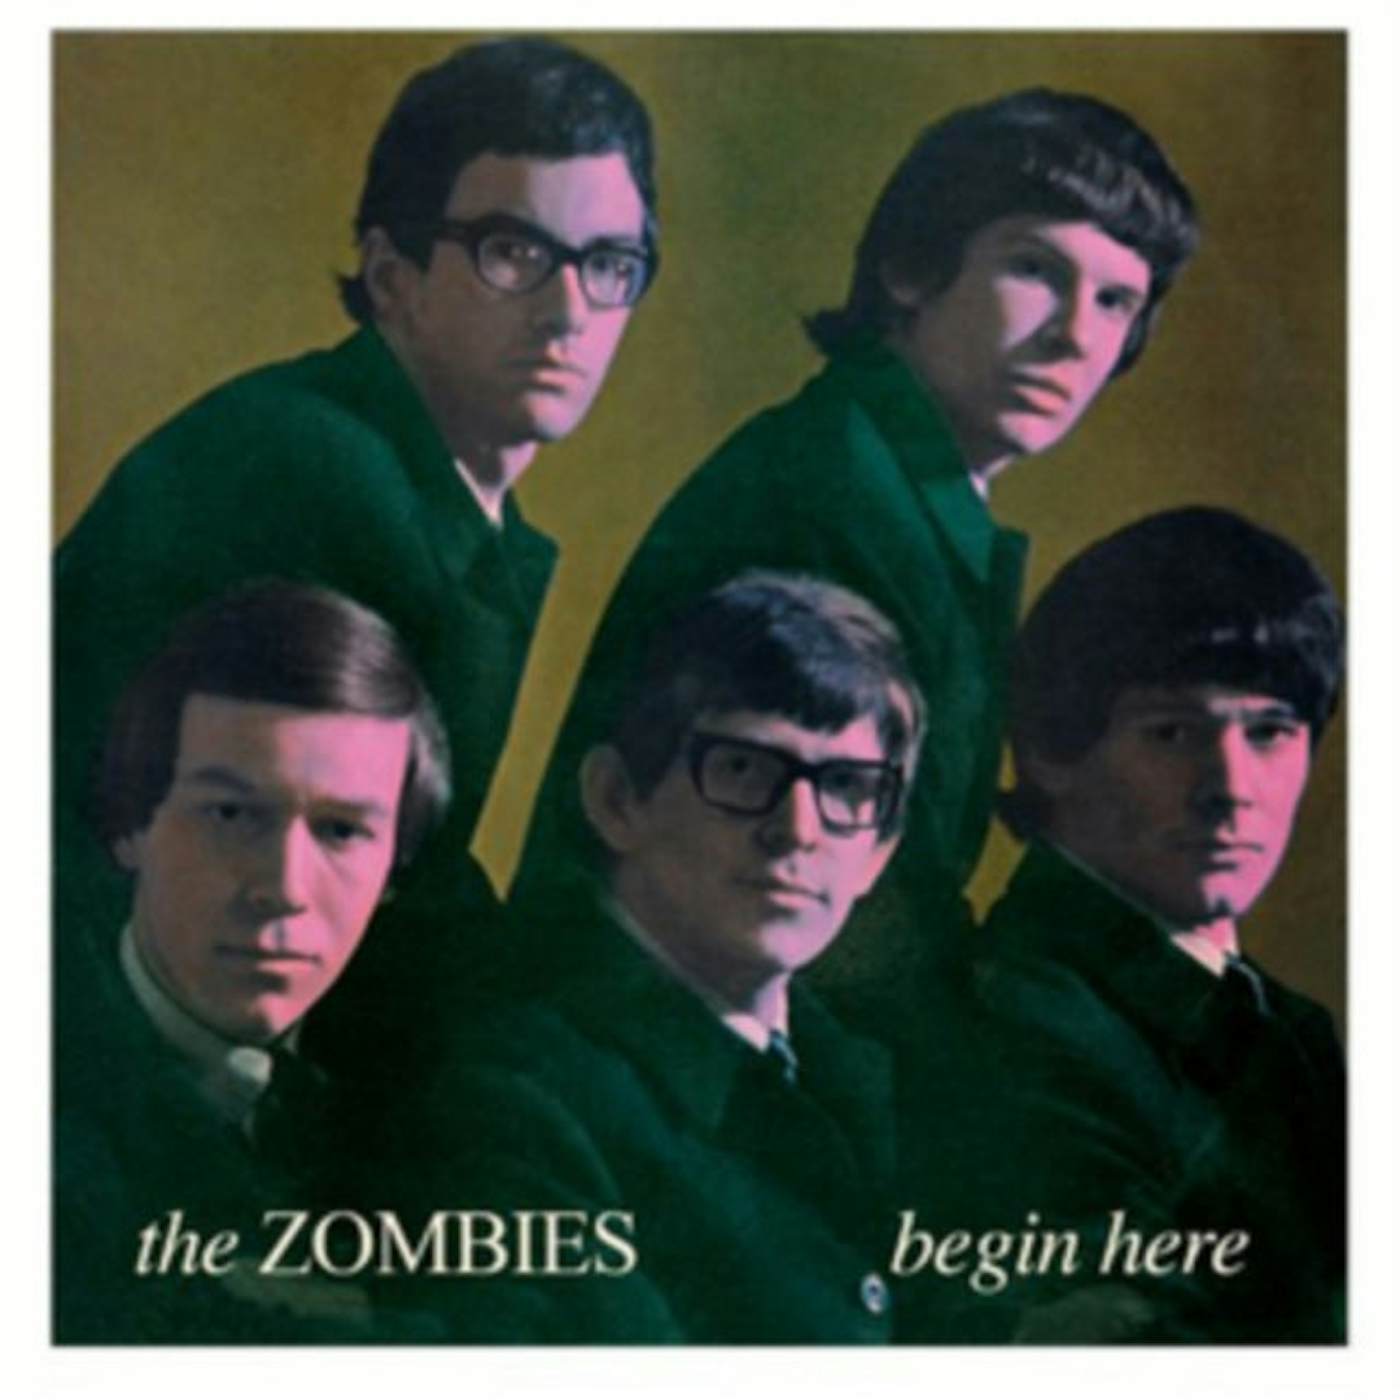 The Zombies LP Vinyl Record - Begin Here (Mono)